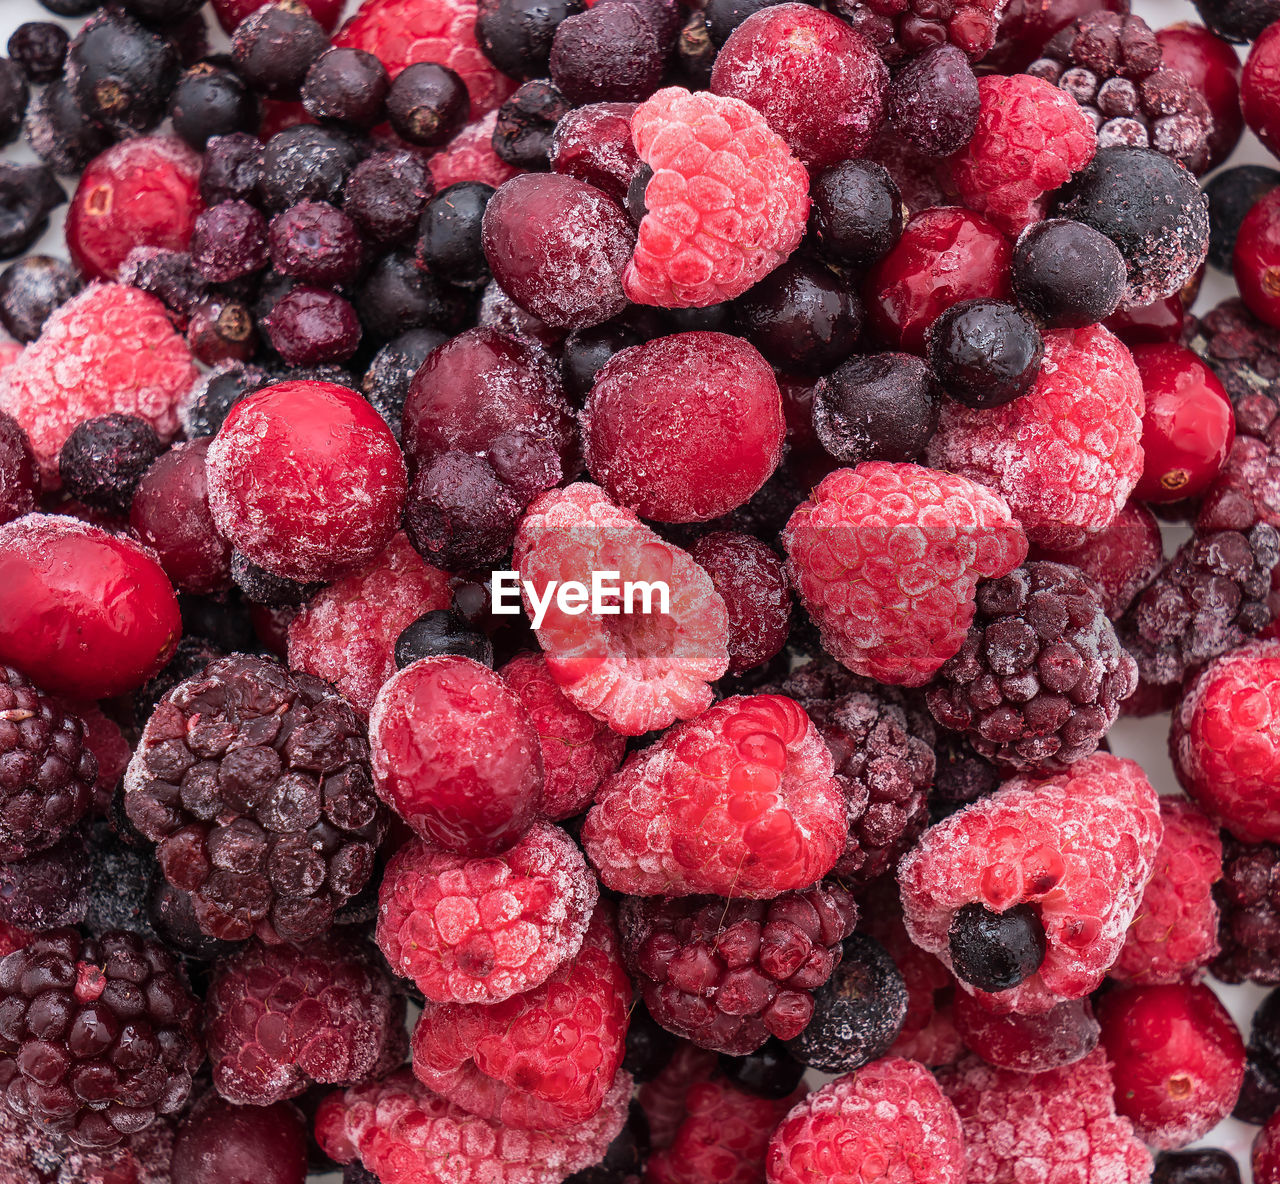 Frozen mixed berry